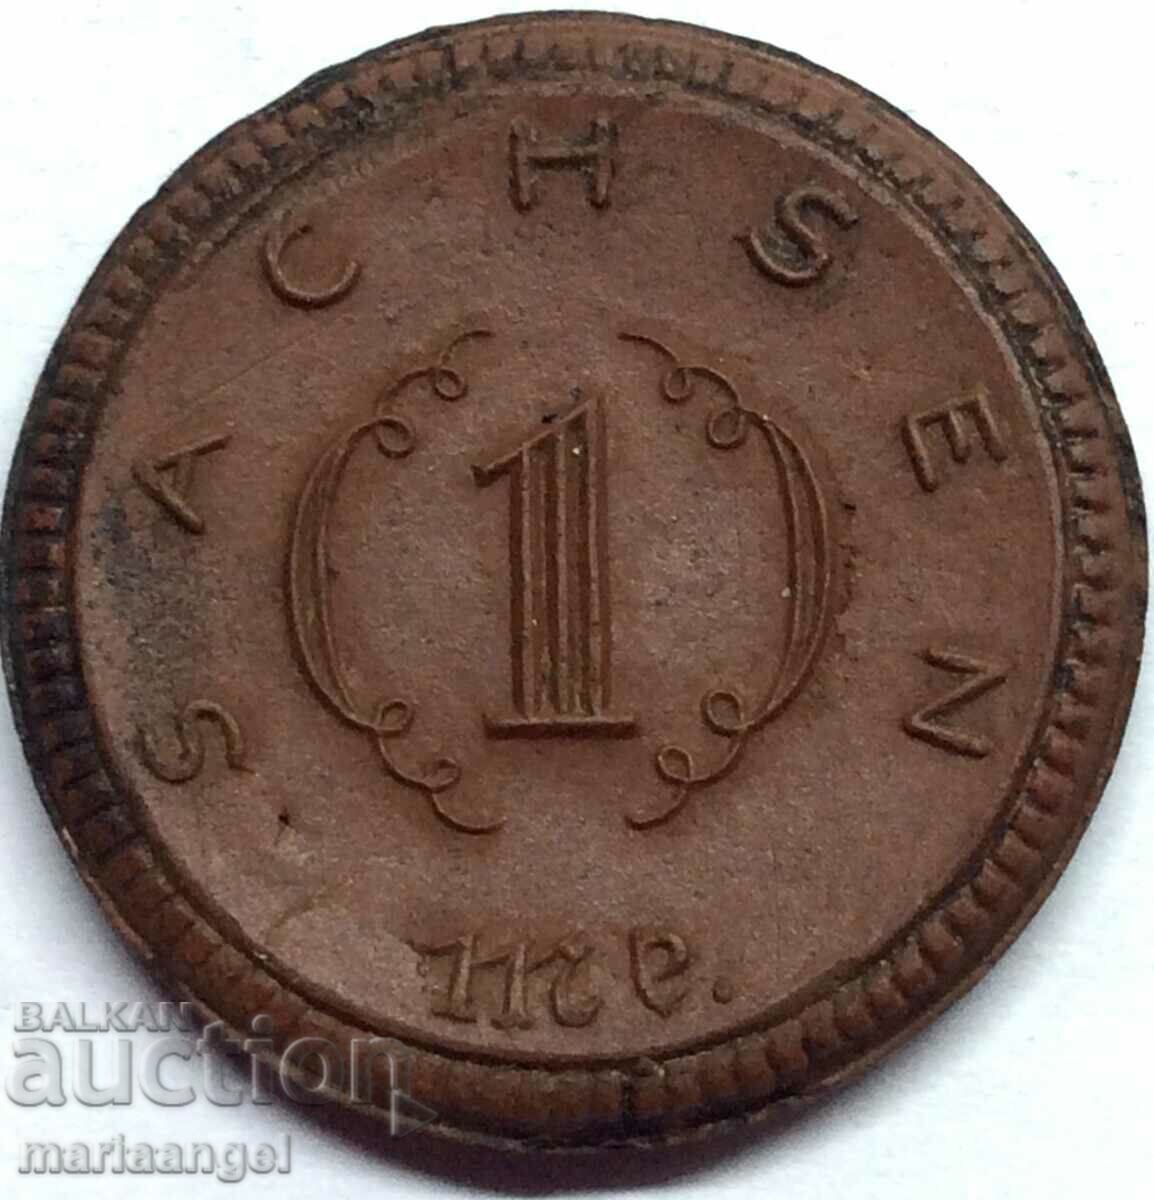 Saxony 1 mark 1921 Γερμανία πορσελάνη